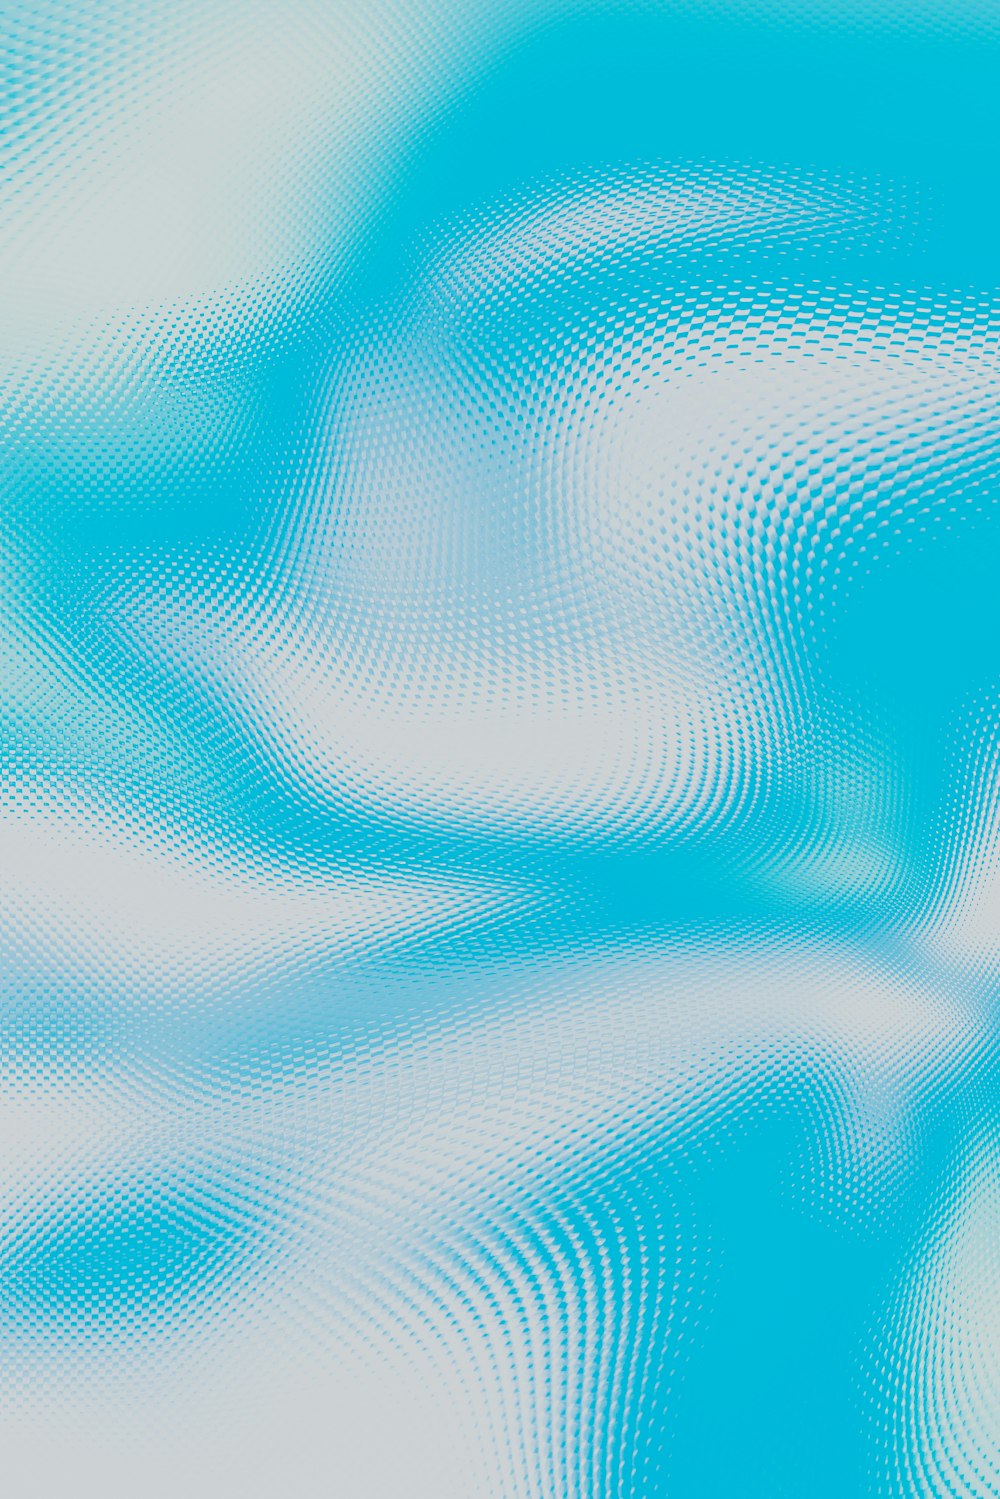 Un fond bleu et blanc avec des lignes ondulées